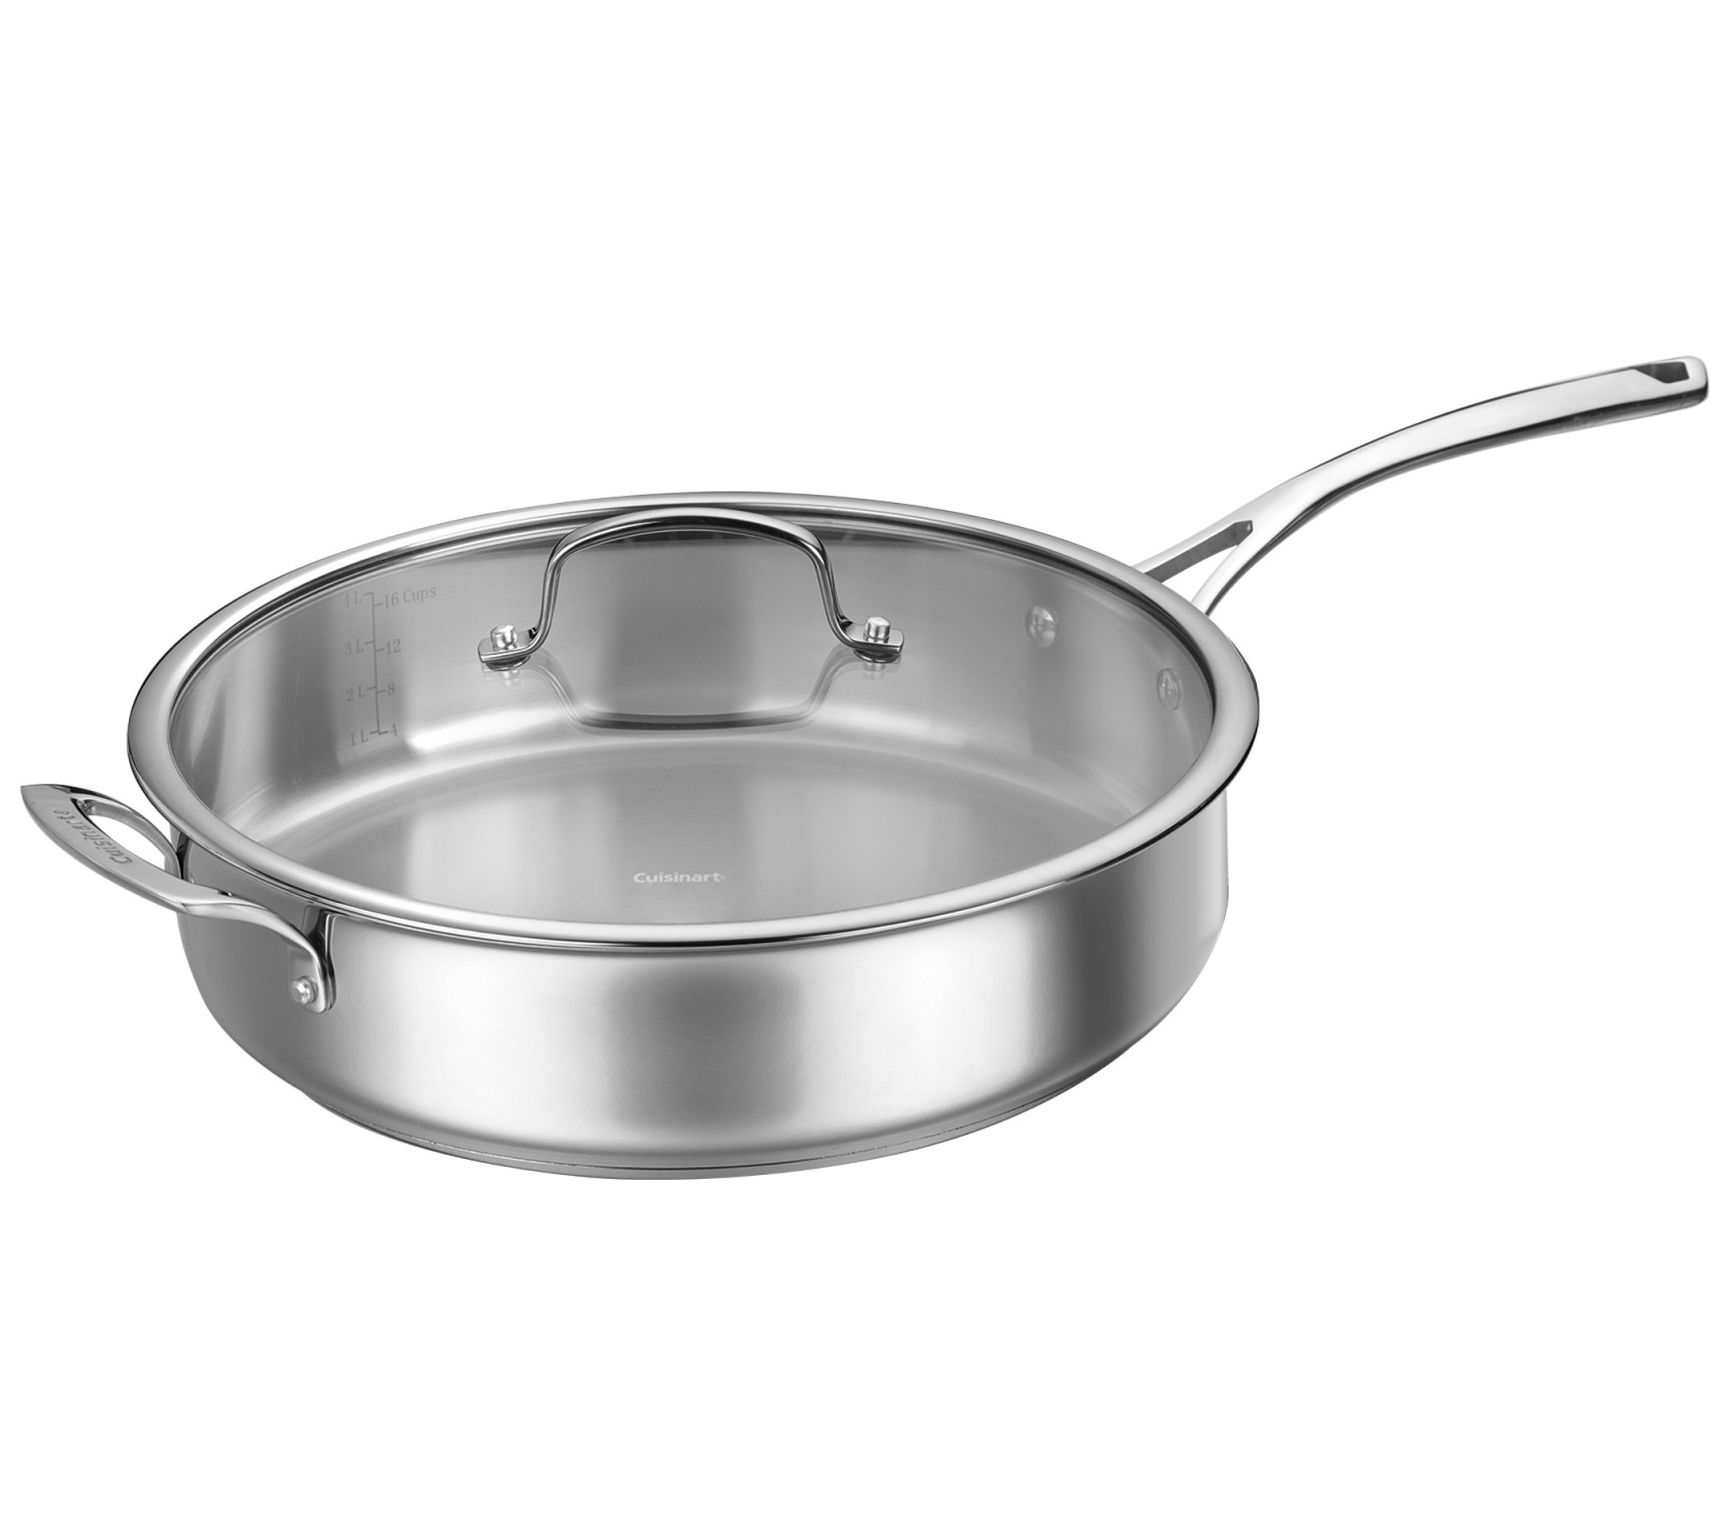 Calphalon Saute Pan with Lid, 5 QT, Silver